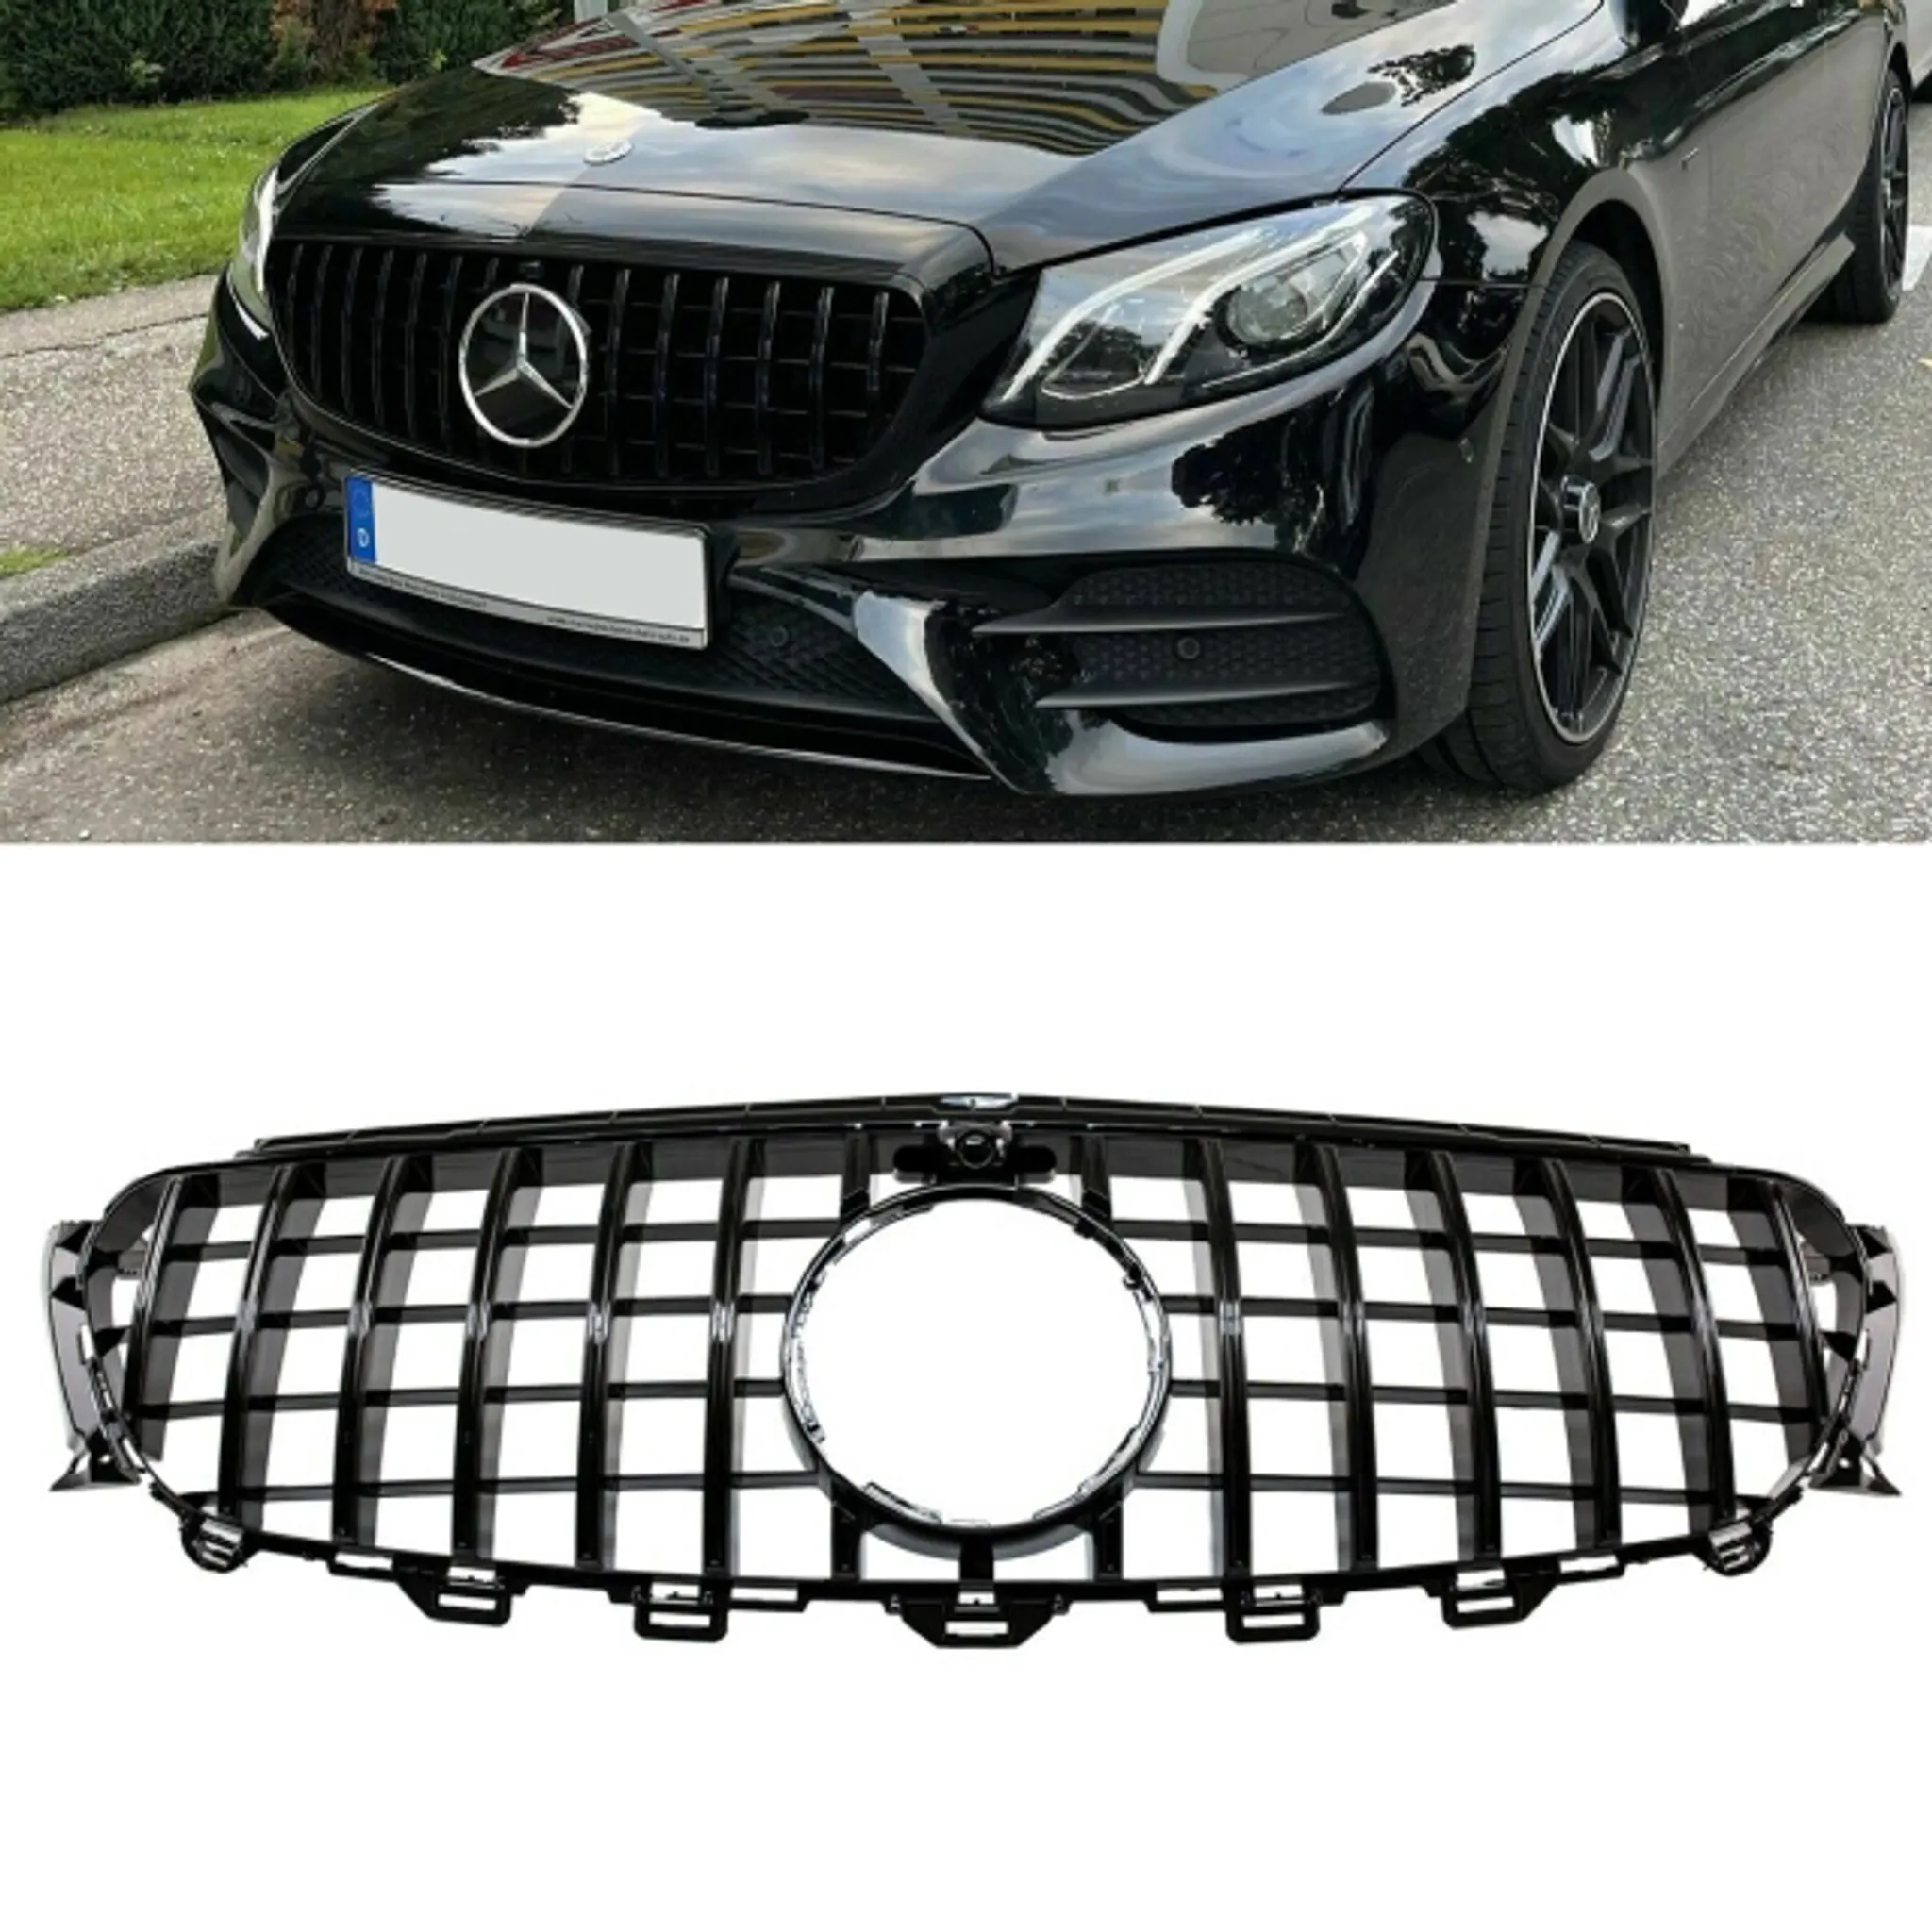 Kühlergrill Schwarz Carbon Glanz passend für Mercedes E Klasse